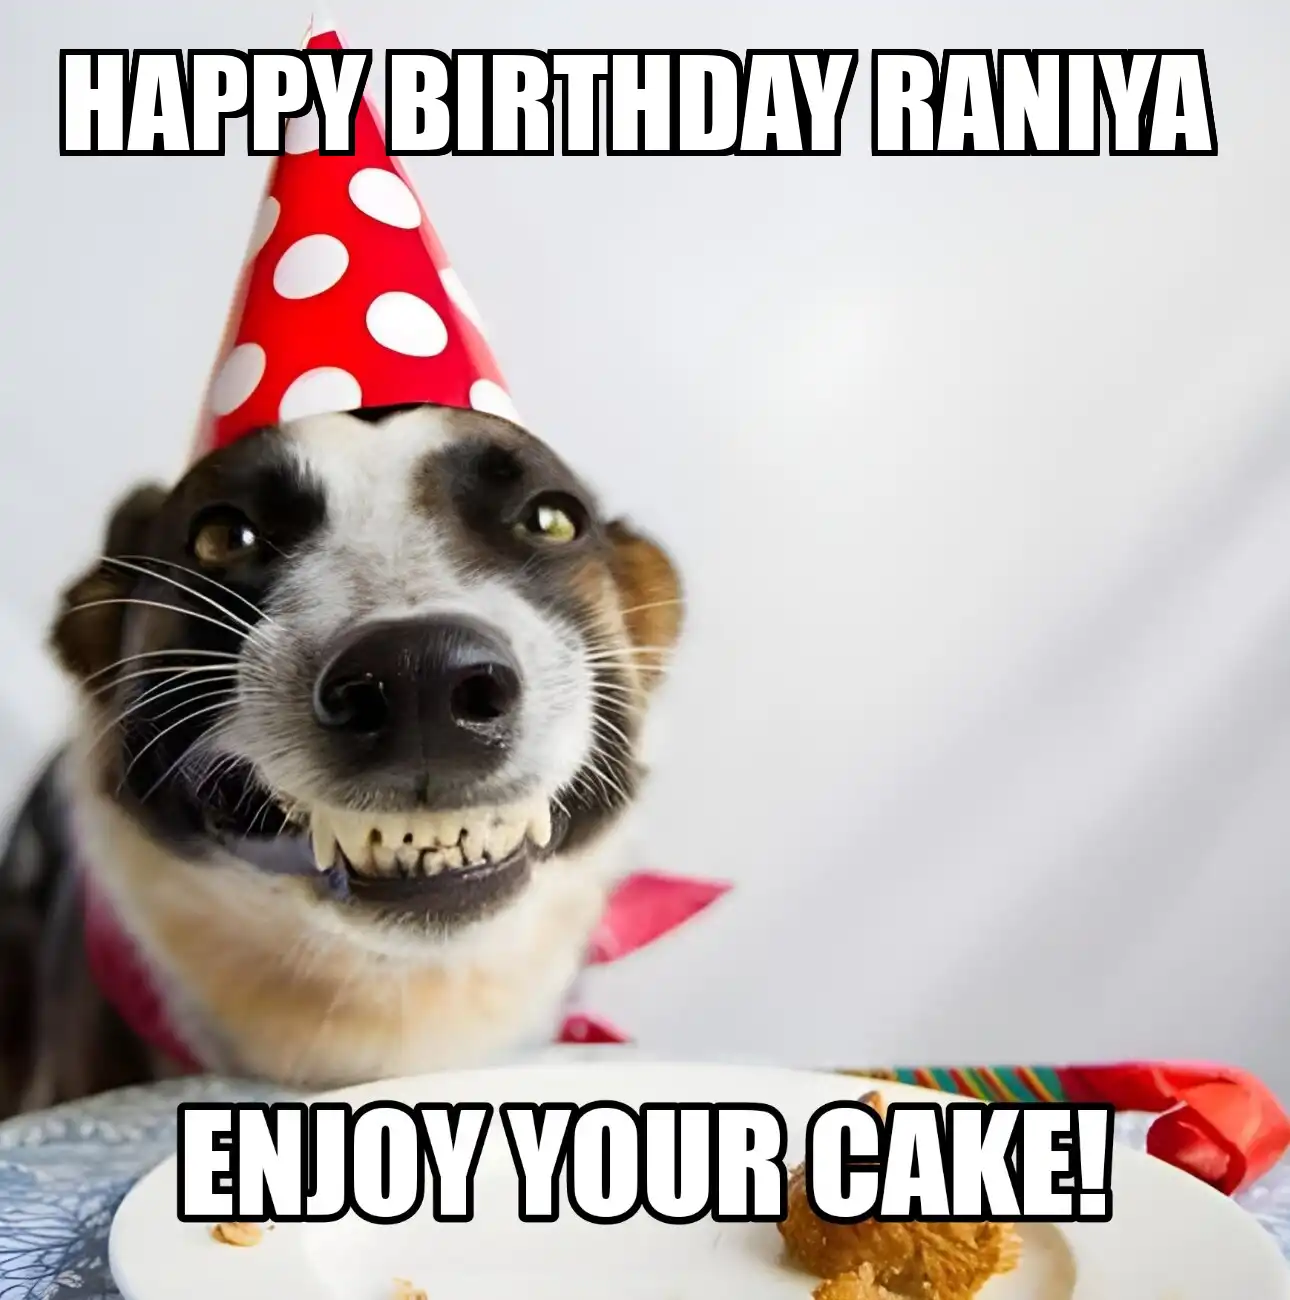 Happy Birthday Raniya Enjoy Your Cake Dog Meme